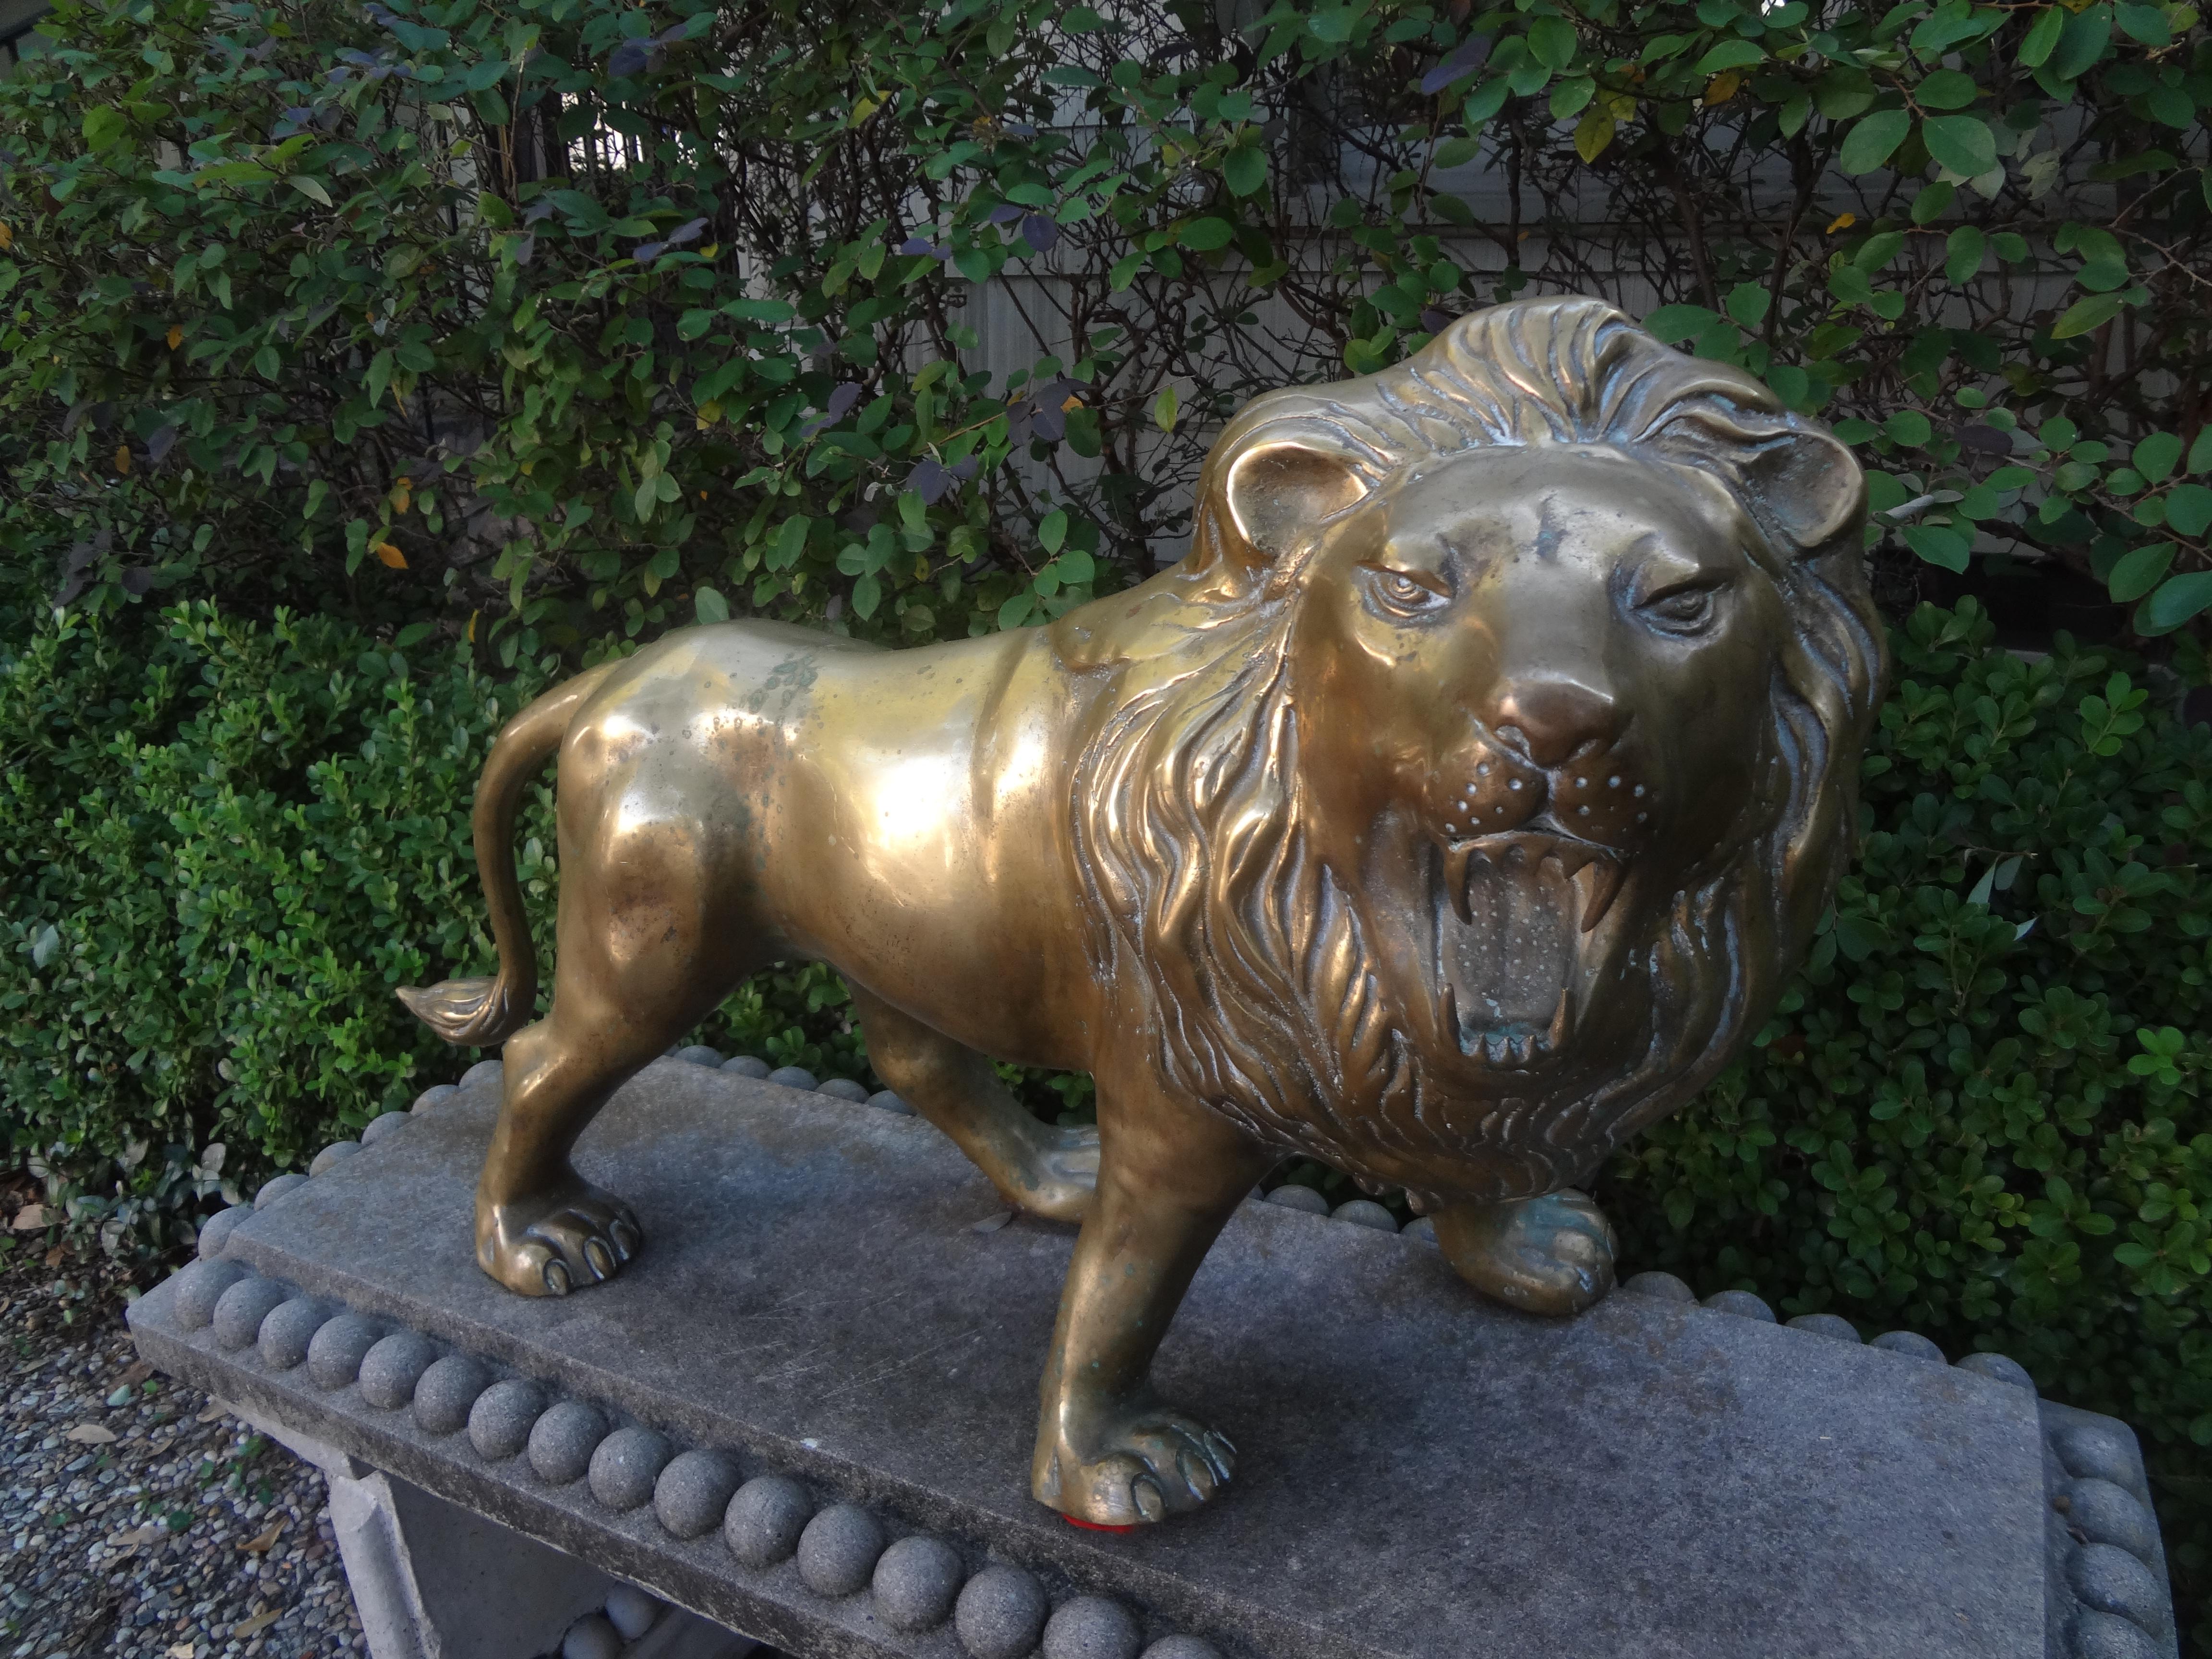 Grande sculpture de lion en laiton de style régence hollywoodienne.
Nous proposons une sympathique statue ou sculpture de lion en laiton de style Hollywood Regency. Magnifiquement détaillé et prêt à ajouter une touche de fantaisie à votre intérieur.